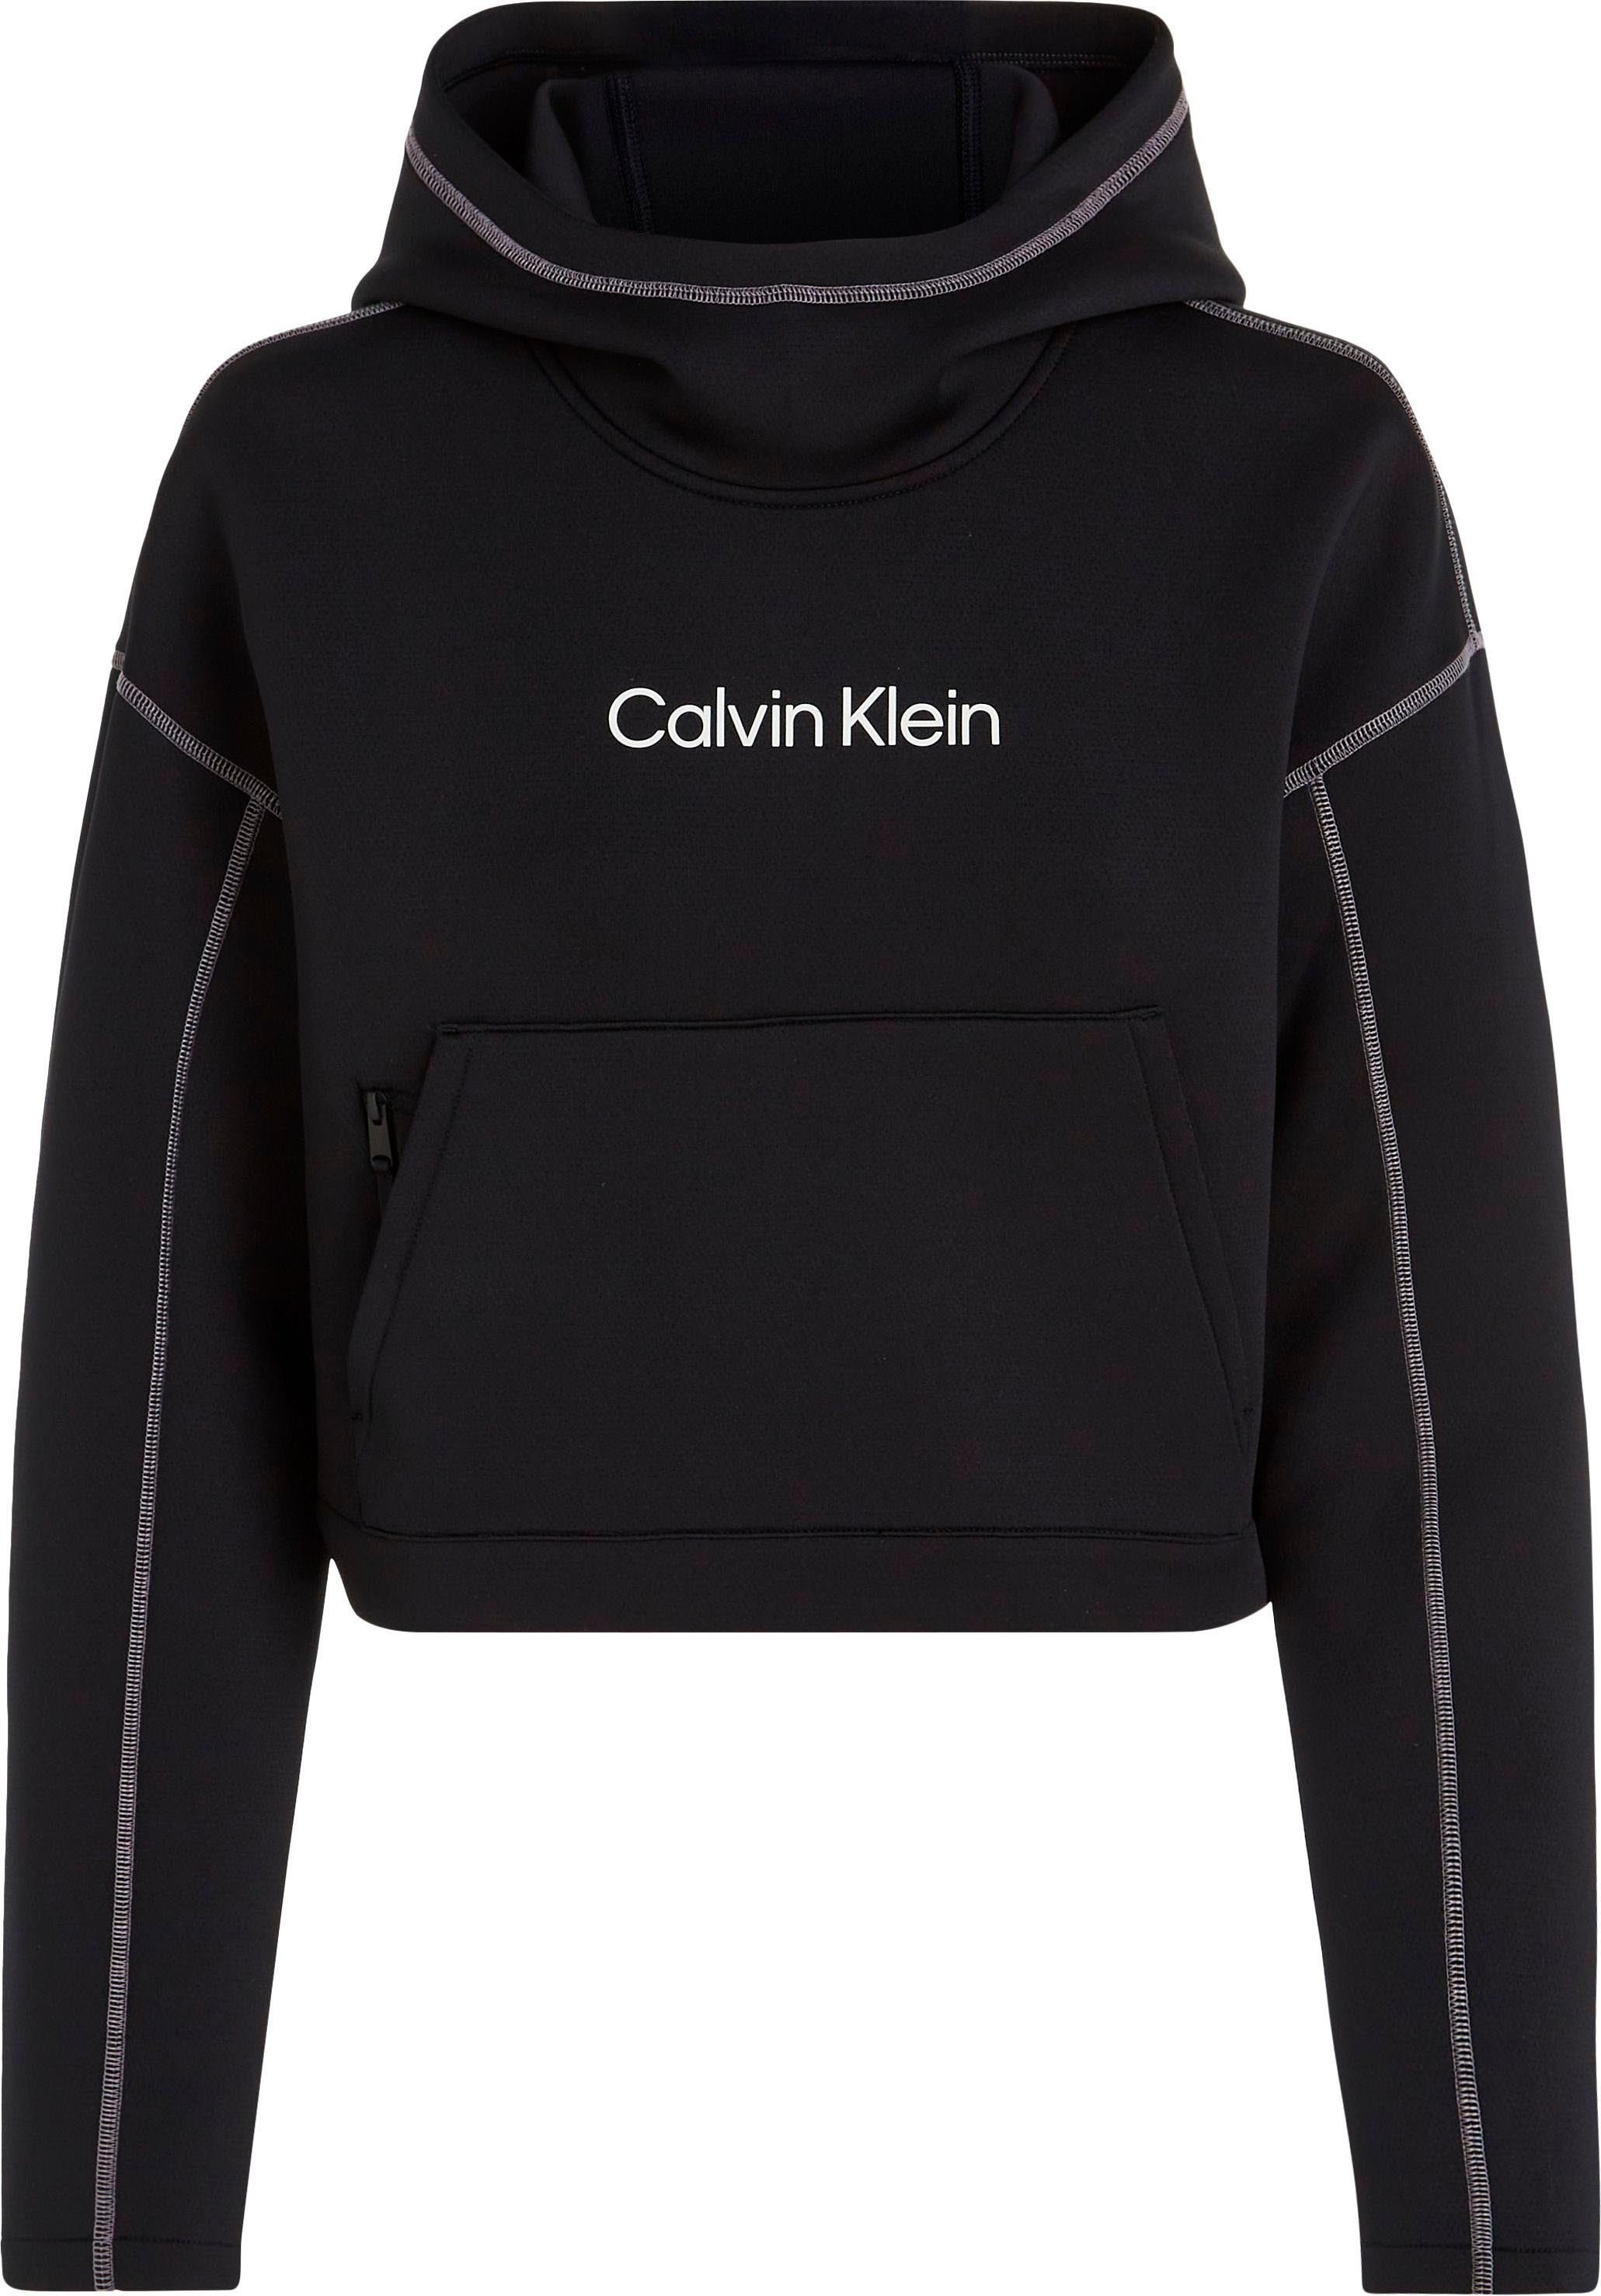 Calvin Klein Sport PW Hoodie Trainingskapuzenpullover - schwarz